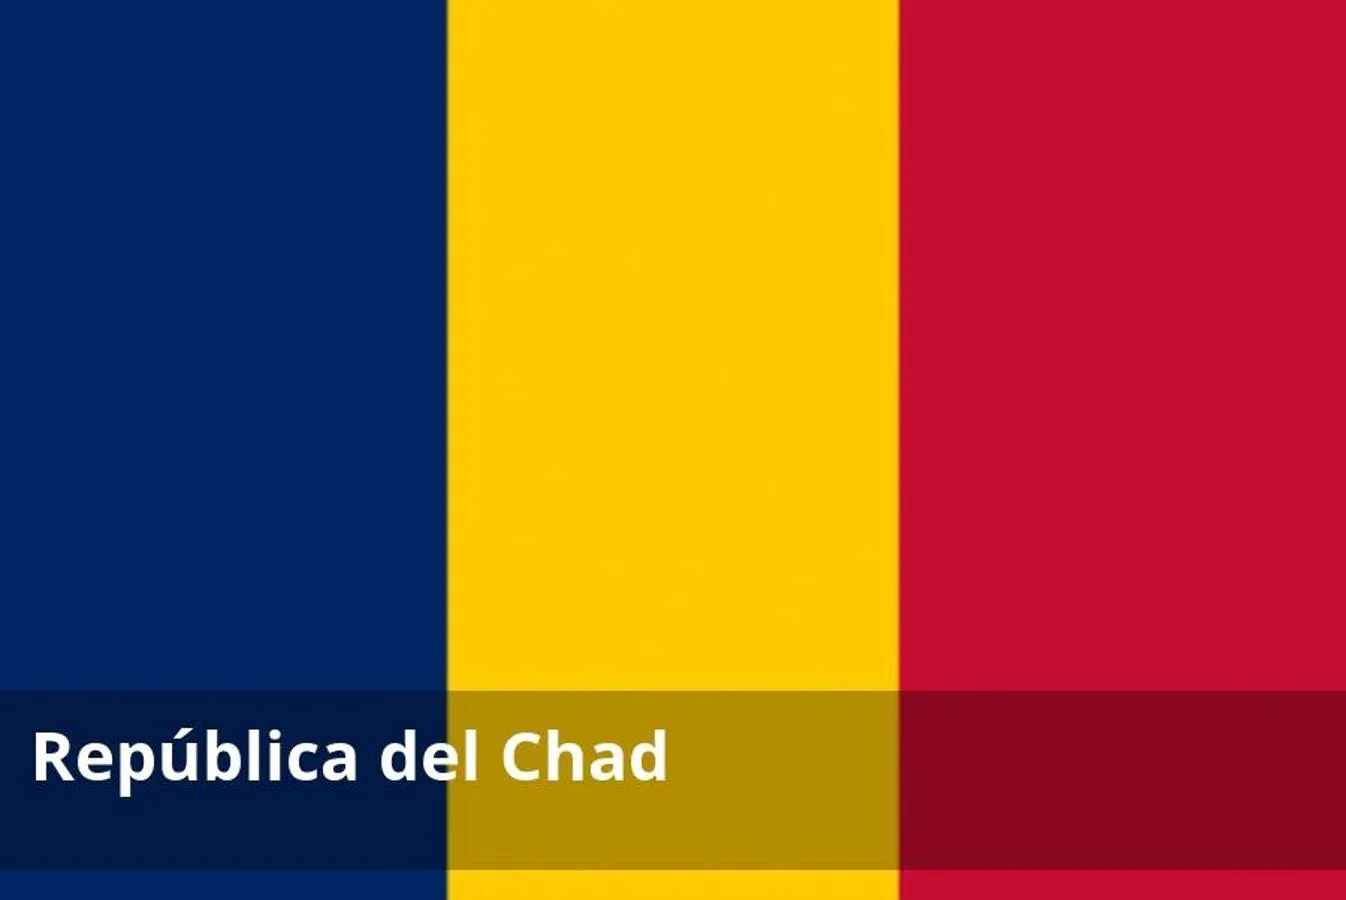 La situación en Chad sigue siendo inestable por lo que se recomienda no viajar a dicho país. Exteriores advierte de que hay un serio riesgo de que se produzcan secuestros en todo el país. Además, en la región chadiana del Lago Chad el gobierno de Chad ha declarado el Estado de Emergencia por la amenaza terrorista.